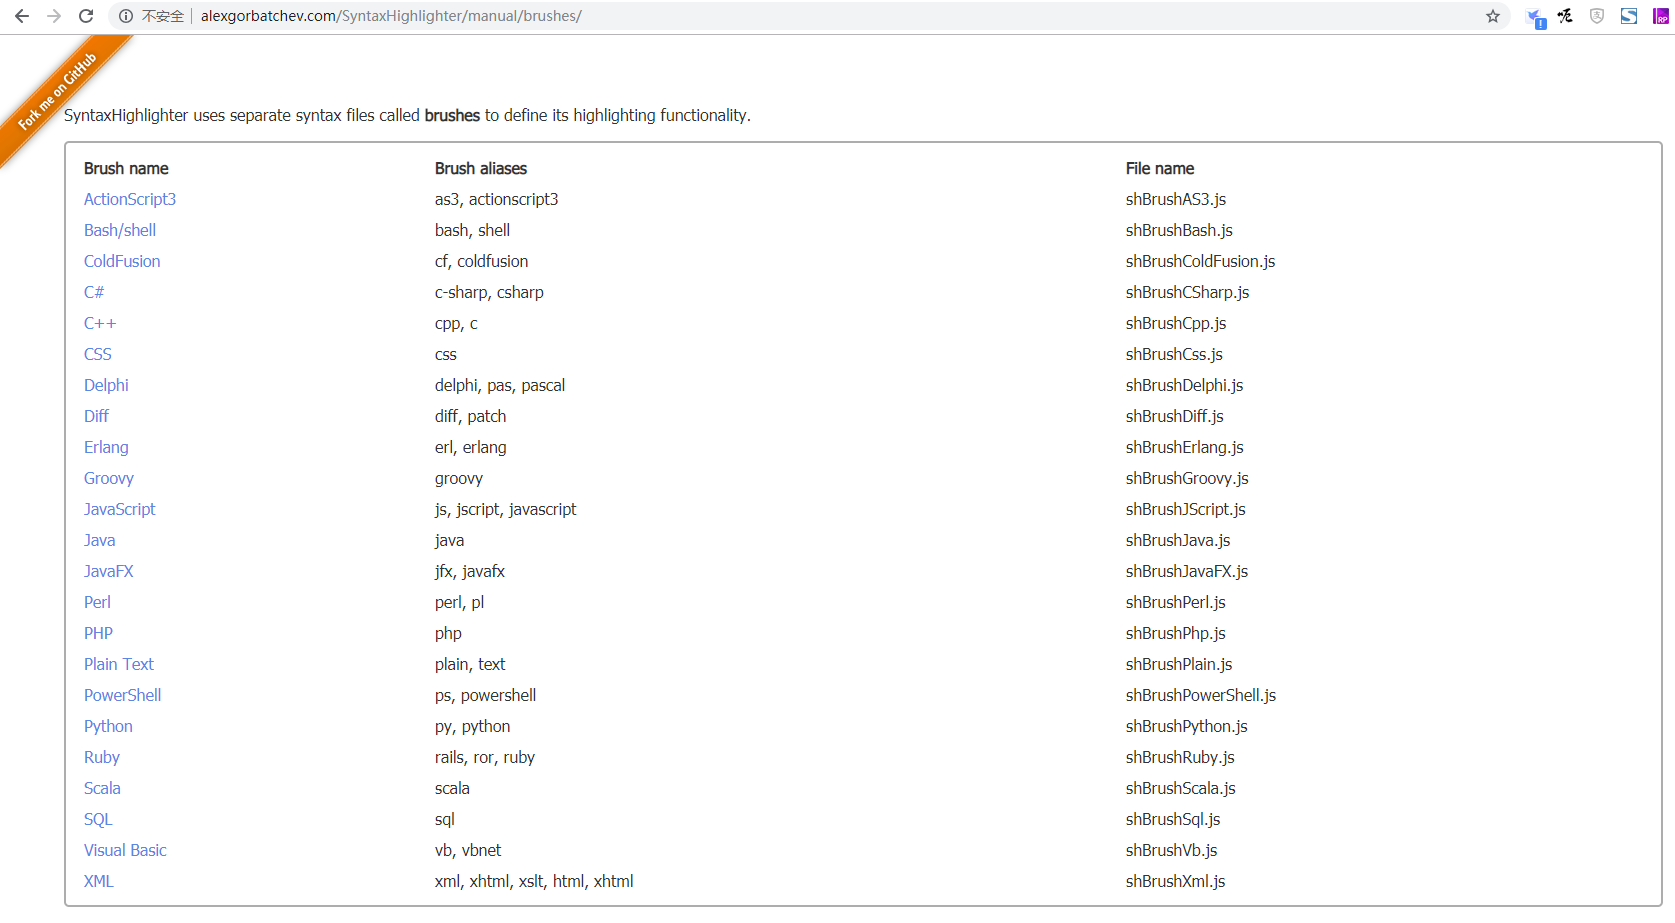 获取有效标签的列表 (在“别名”下)，打开网址：http://alexgorbatchev.com/SyntaxHighlighter/manual/brushes/ ，发现暂不支持 Go 语言